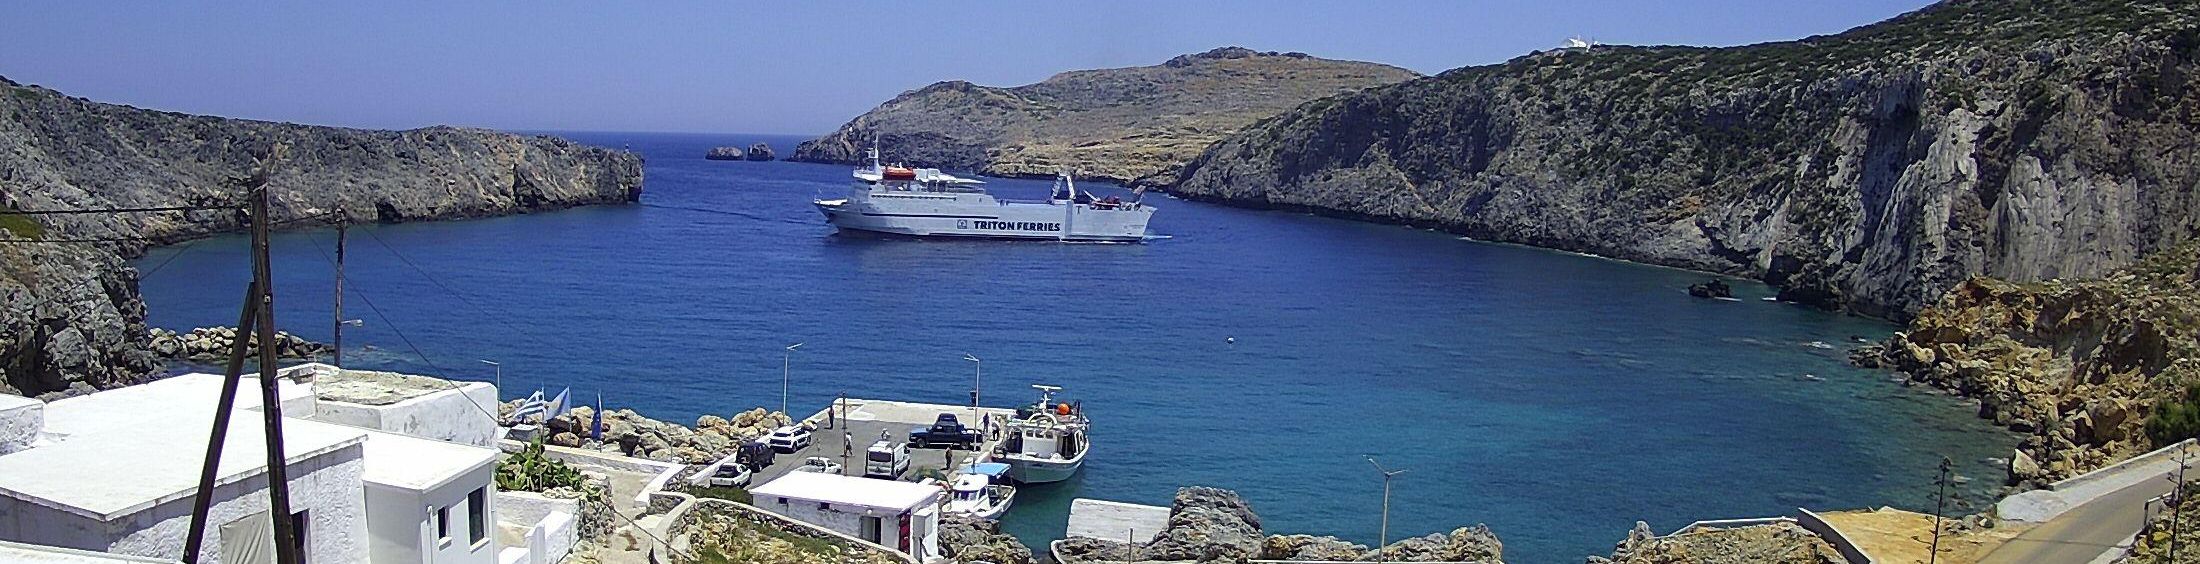 Insel Kythira – Reiseführer – Griechenland